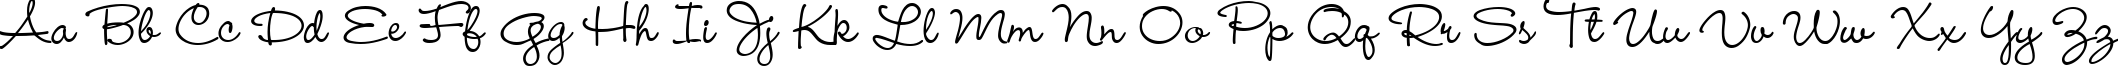 Пример написания английского алфавита шрифтом Wendy Medium